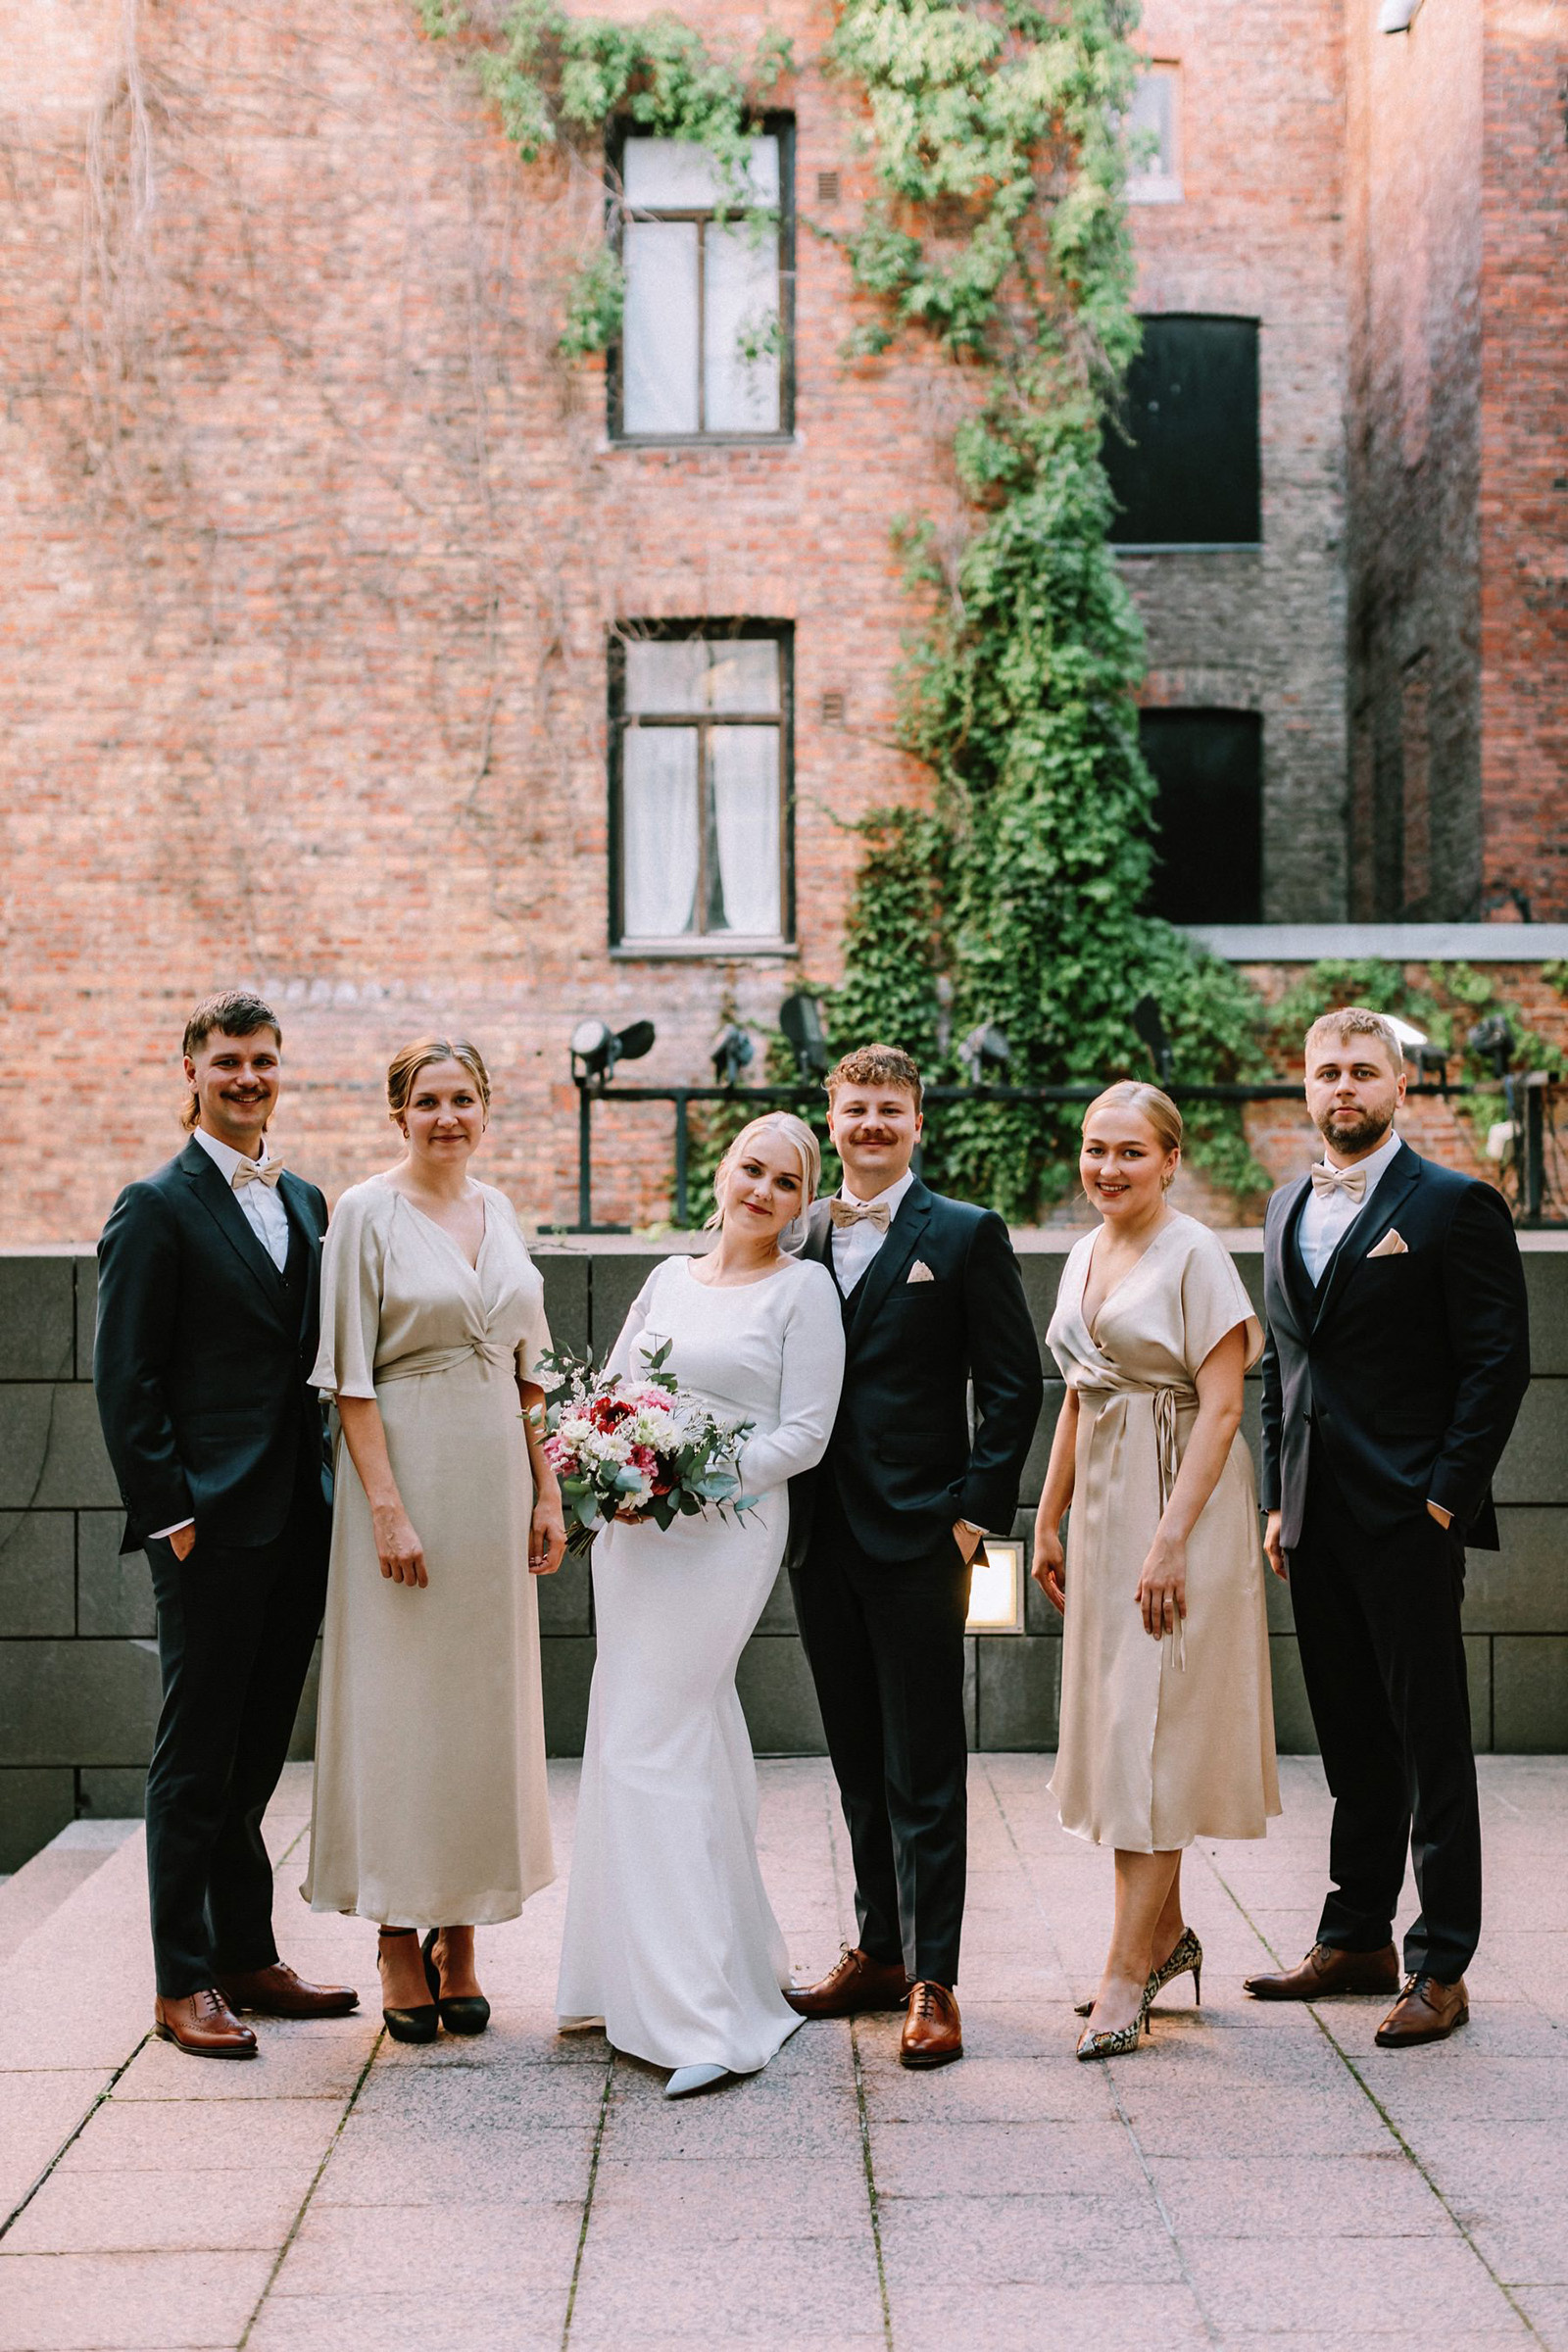 Helsinki wedding at G18